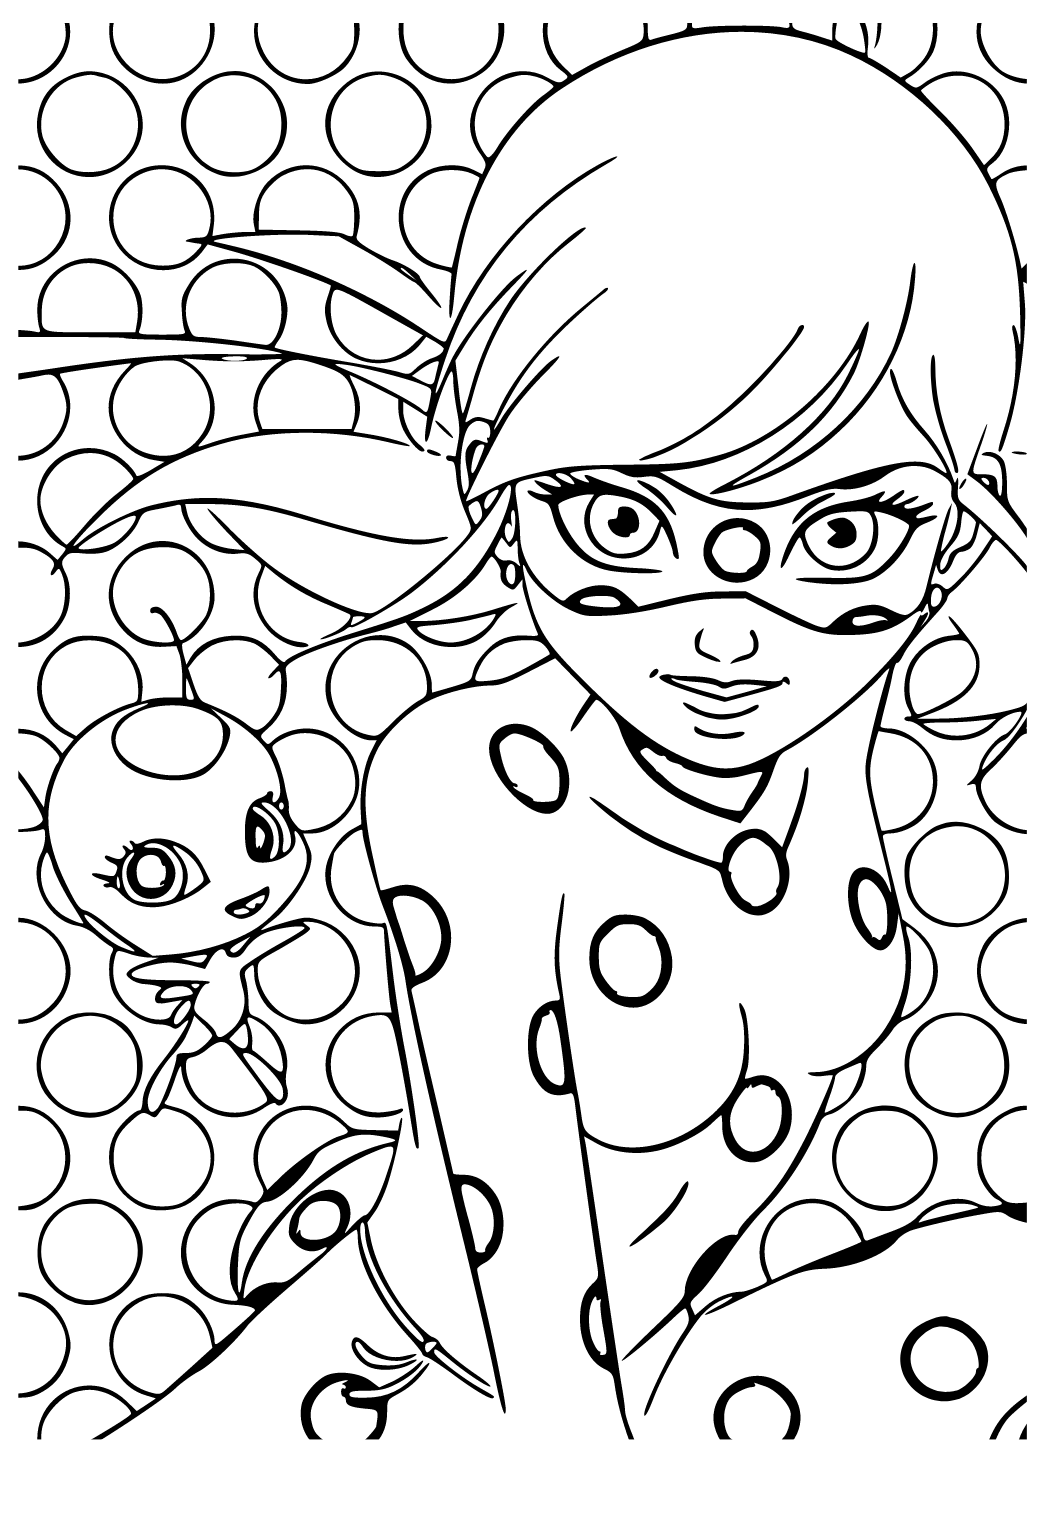 Desenho e Imagem Ladybug Assistente para Colorir e Imprimir Grátis